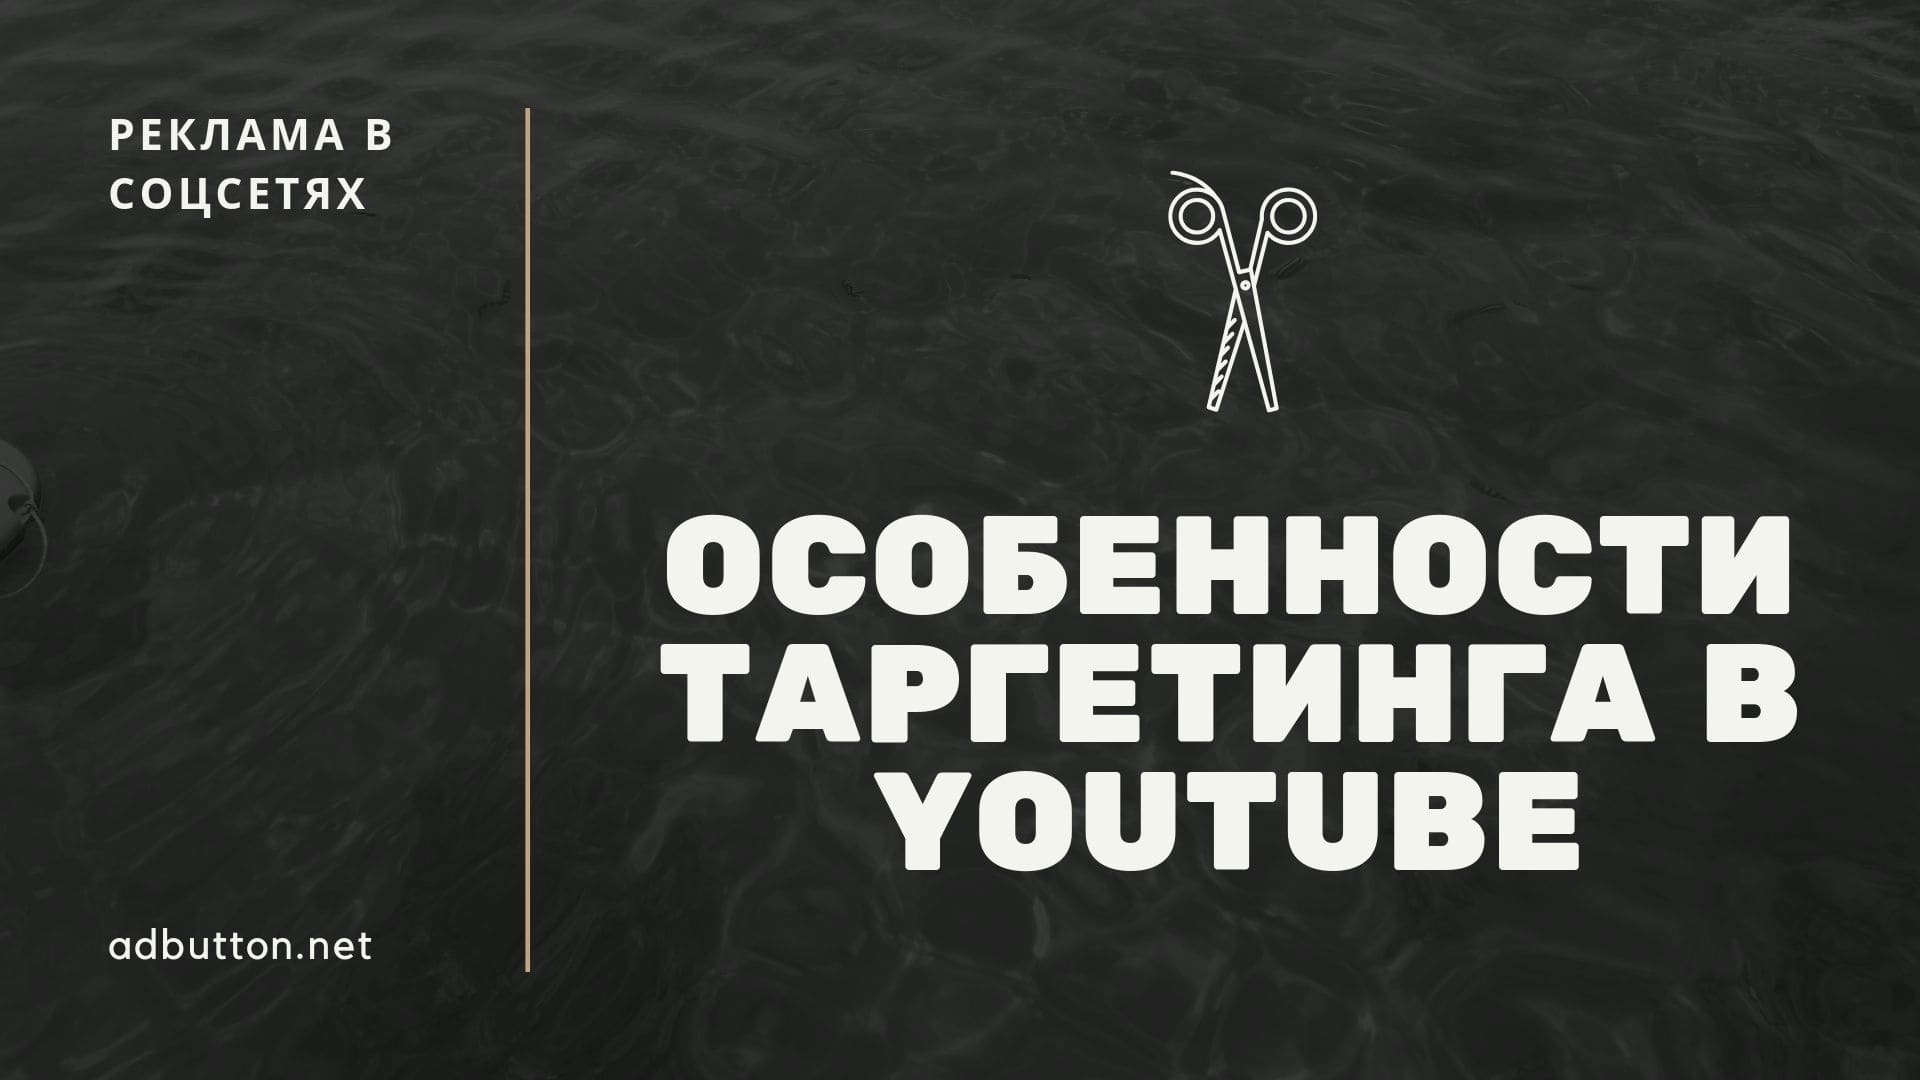 Таргетинг YouTube: разновидности объявлений и форматы рекламы